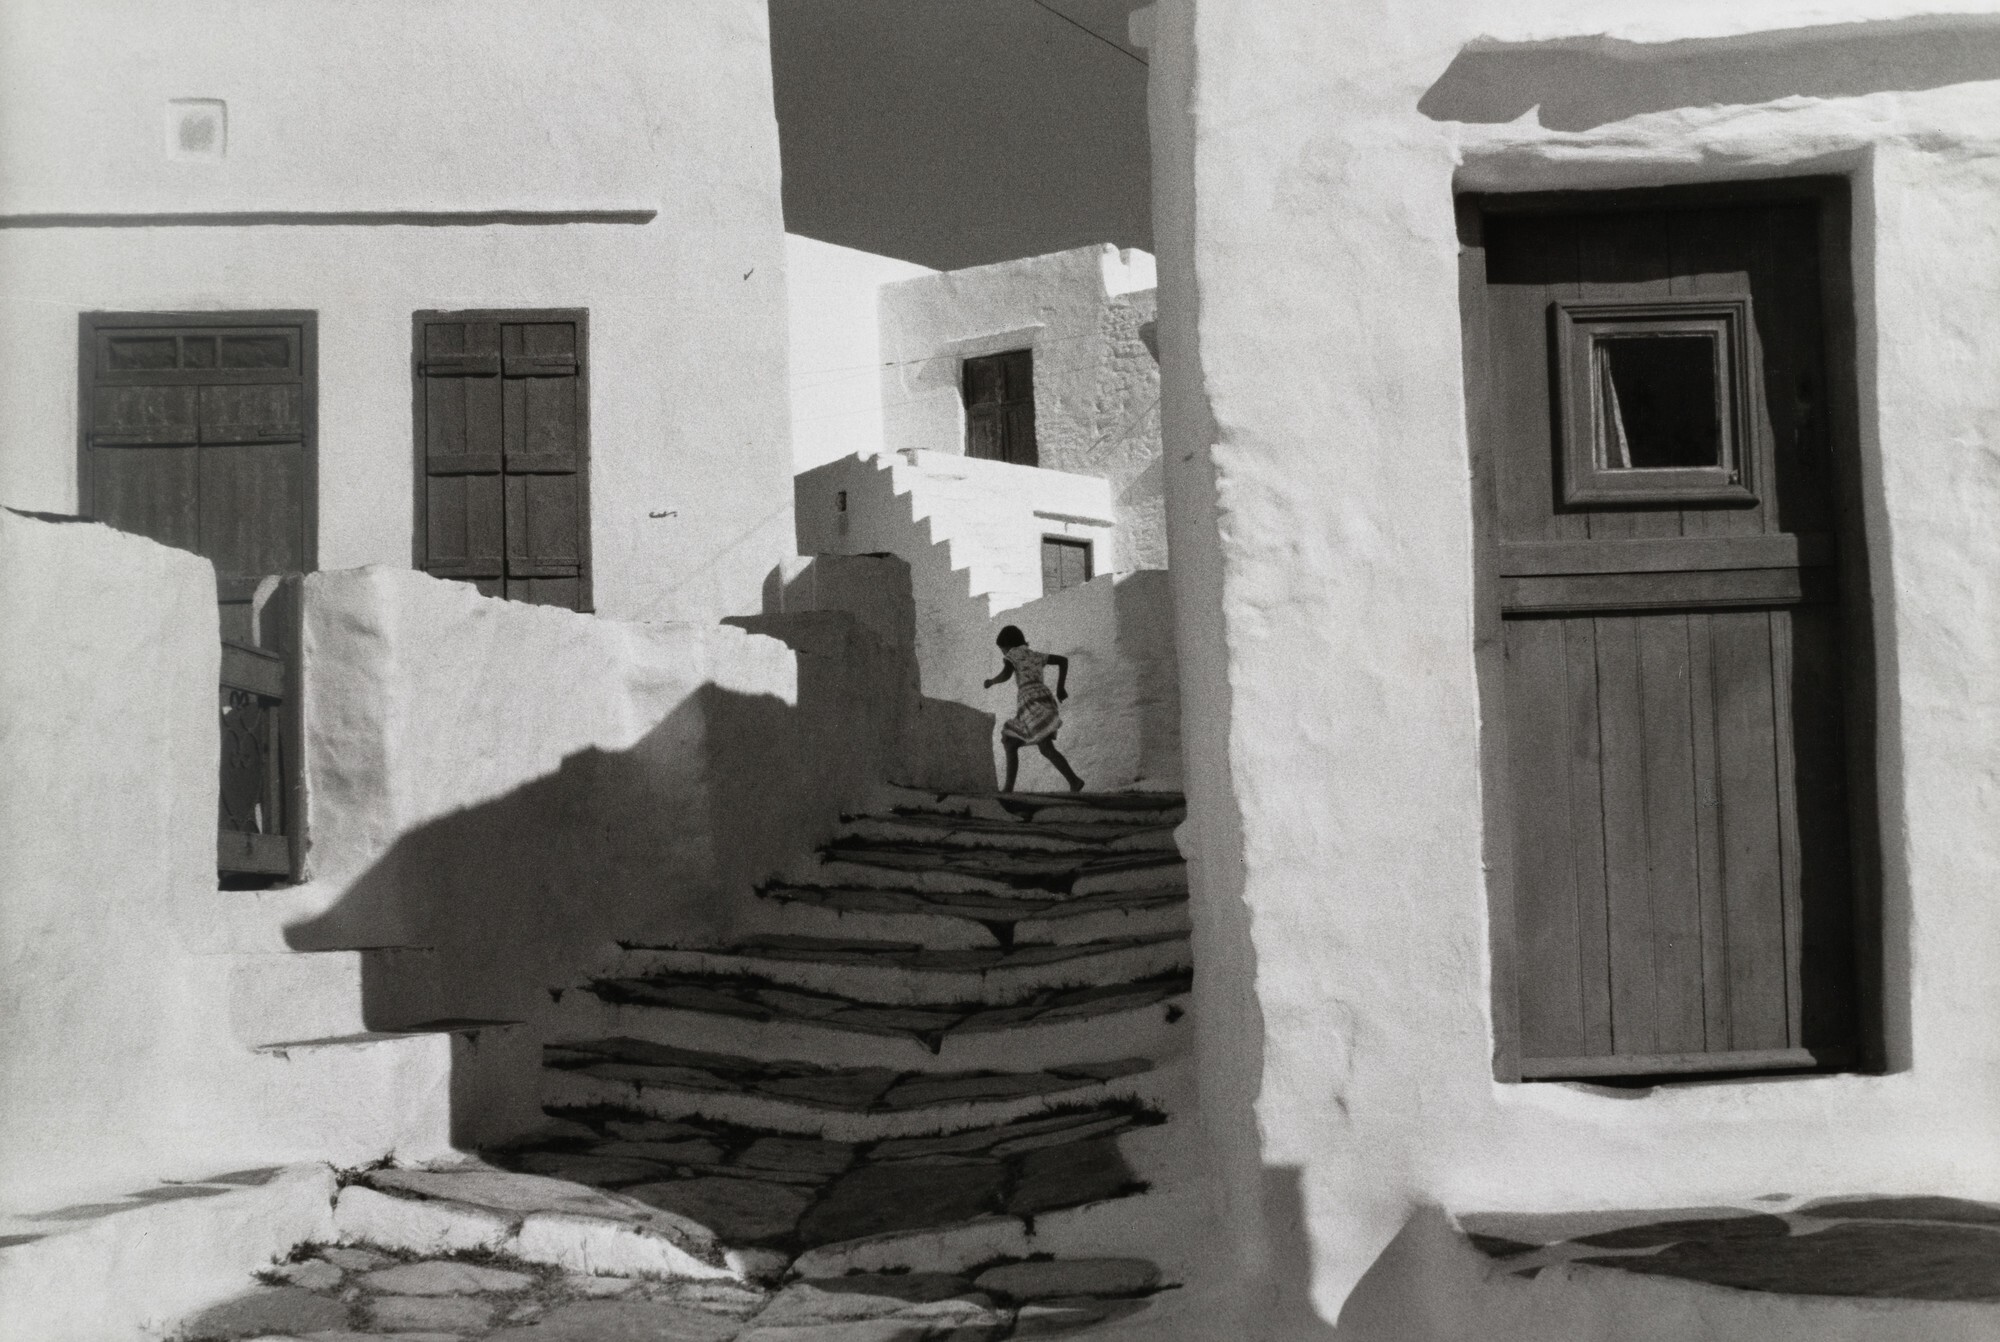 Остров Сифнос архипелага Киклады, Греция, 1961. Фотограф Анри Картье-Брессон